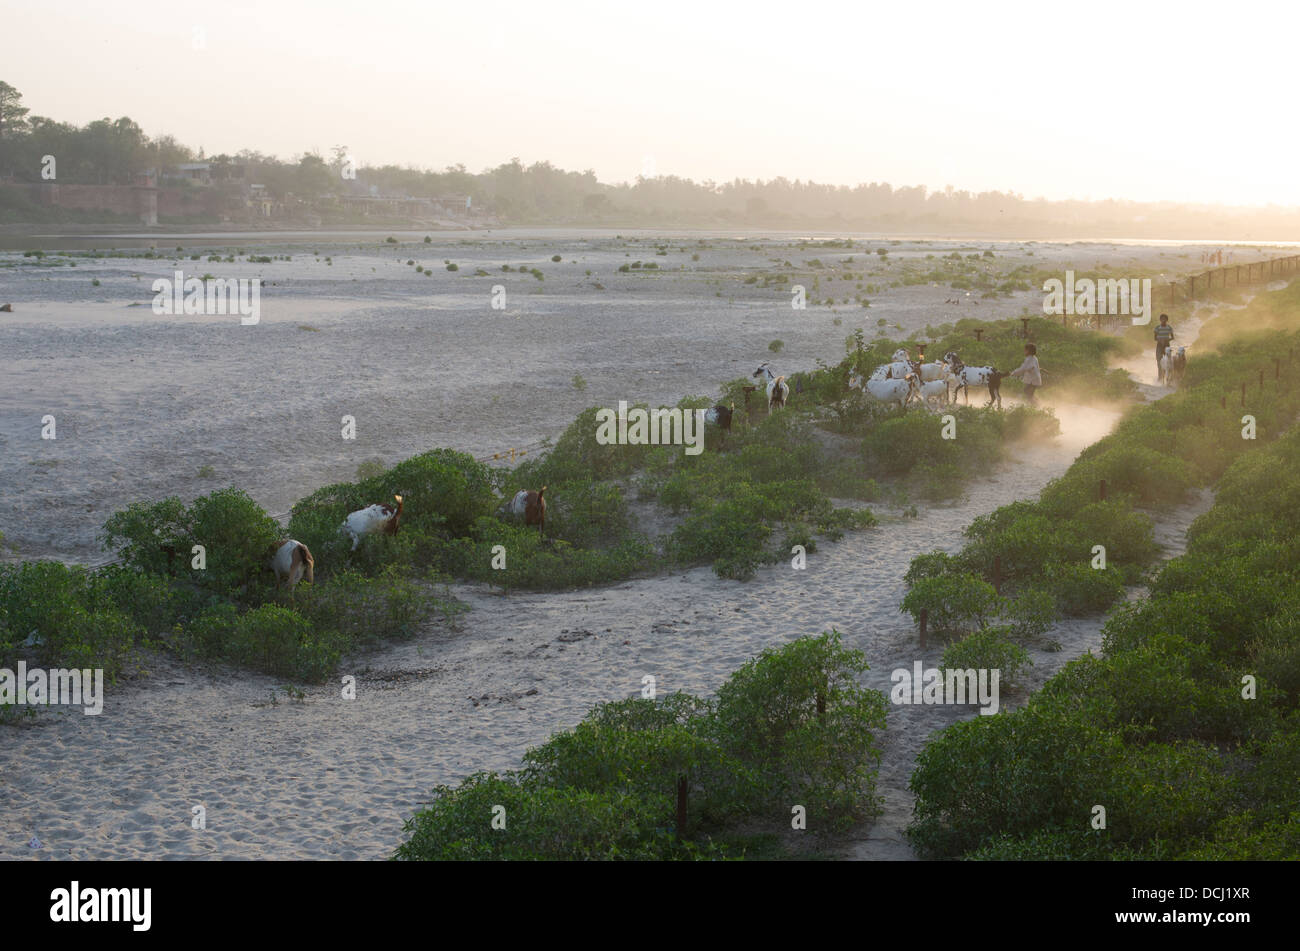 Les jeunes éleveurs de chèvres sur les rives de la rivière Yamuna au crépuscule / Crépuscule. Agra, Inde Banque D'Images